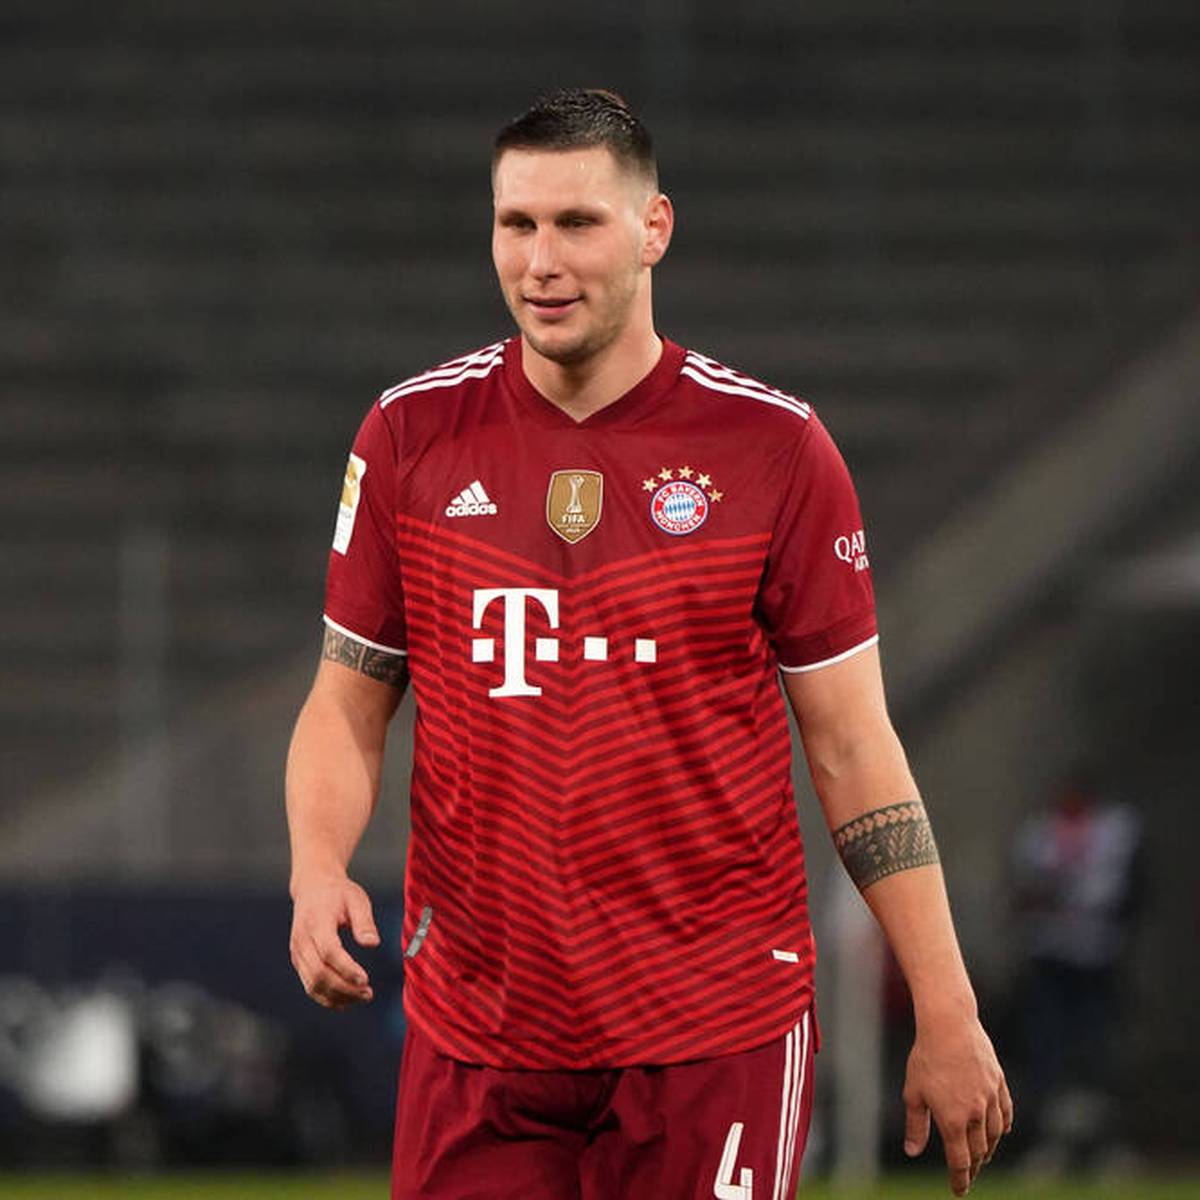  Niklas Süle entscheidet sich gegen eine Vertragsverlängerung beim FC Bayern. Nicht nur des Geldes wegen. SPORT1 nennt die Gründe für den nahenden Abgang des Nationalspielers.